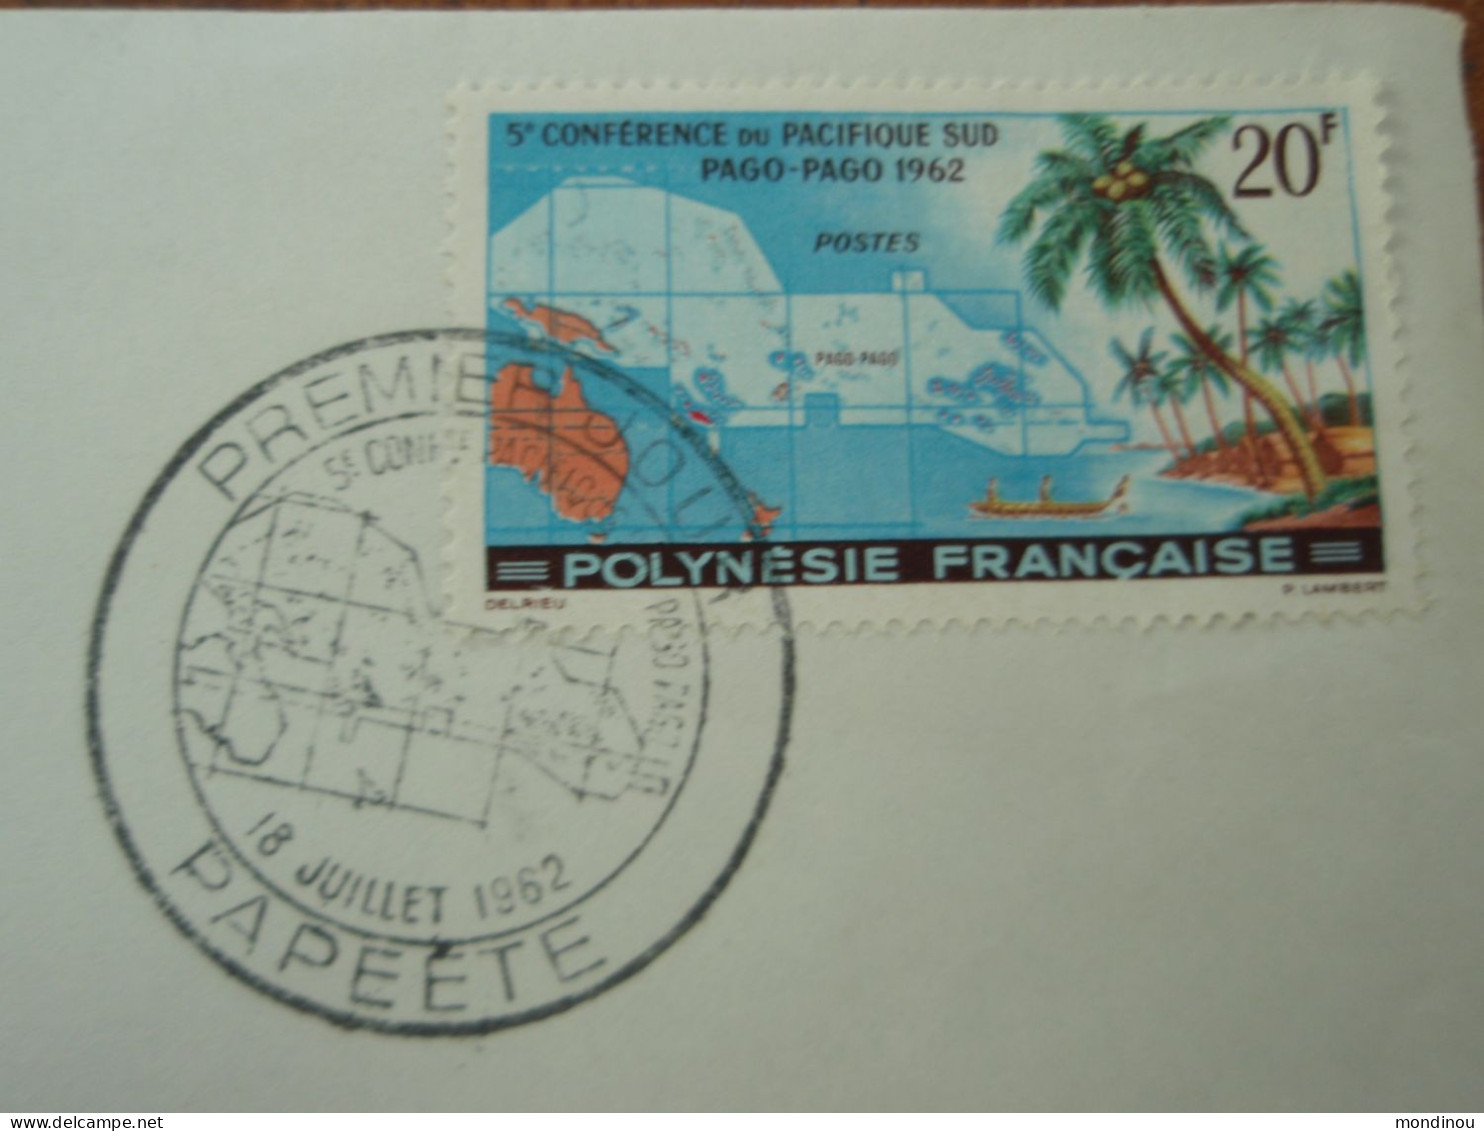 Timbre Polynésie Française - 5° Conférence Du Pacifique Sud PAGO-PAGO 1962 - Premier Jour PAPEETE - Oblitérés